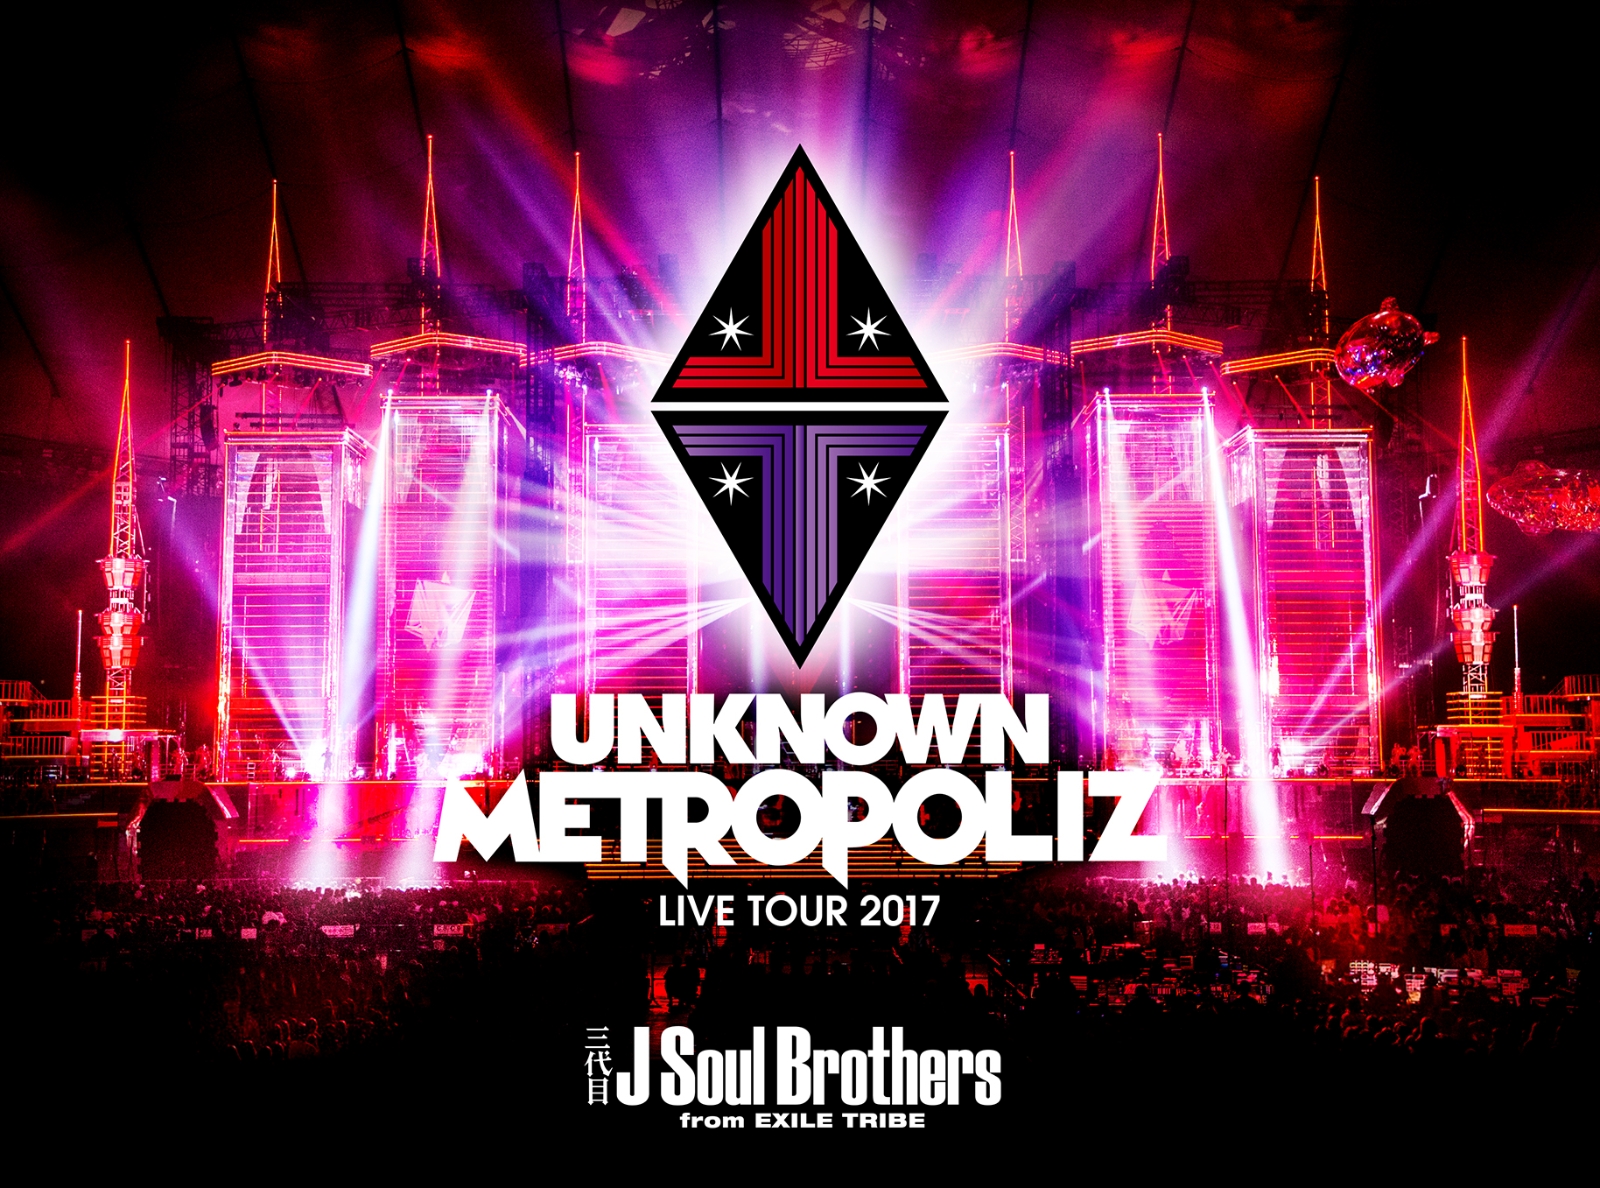 楽天ブックス: 三代目 J Soul Brothers LIVE TOUR 2017 “UNKNOWN METROPOLIZ”(初回生産限定盤